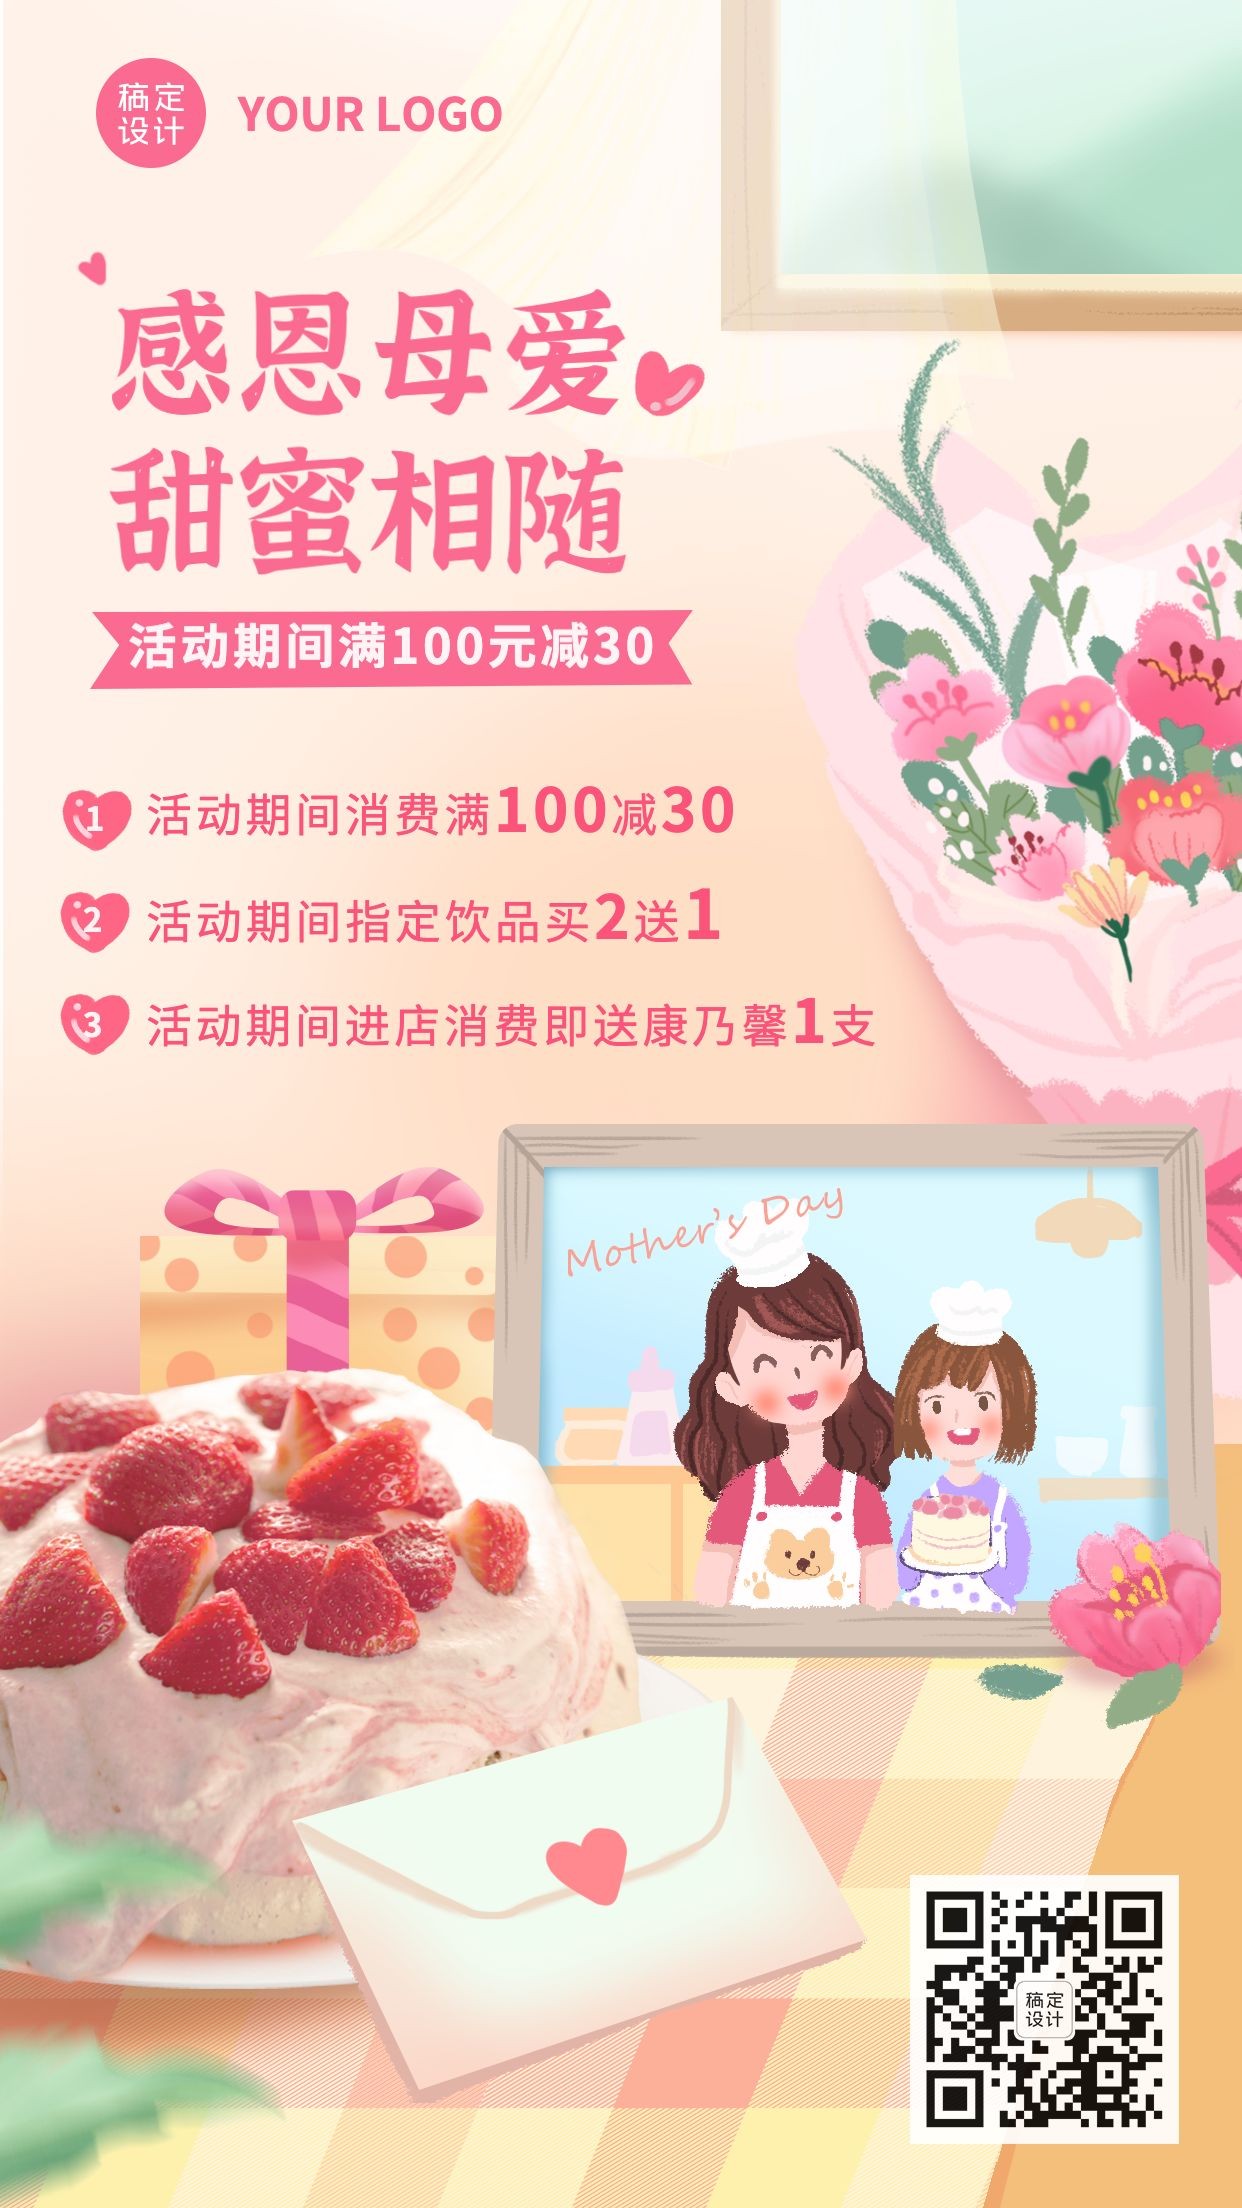 创意甜蜜手绘母亲节餐饮蛋糕烘焙产品营销手机海报